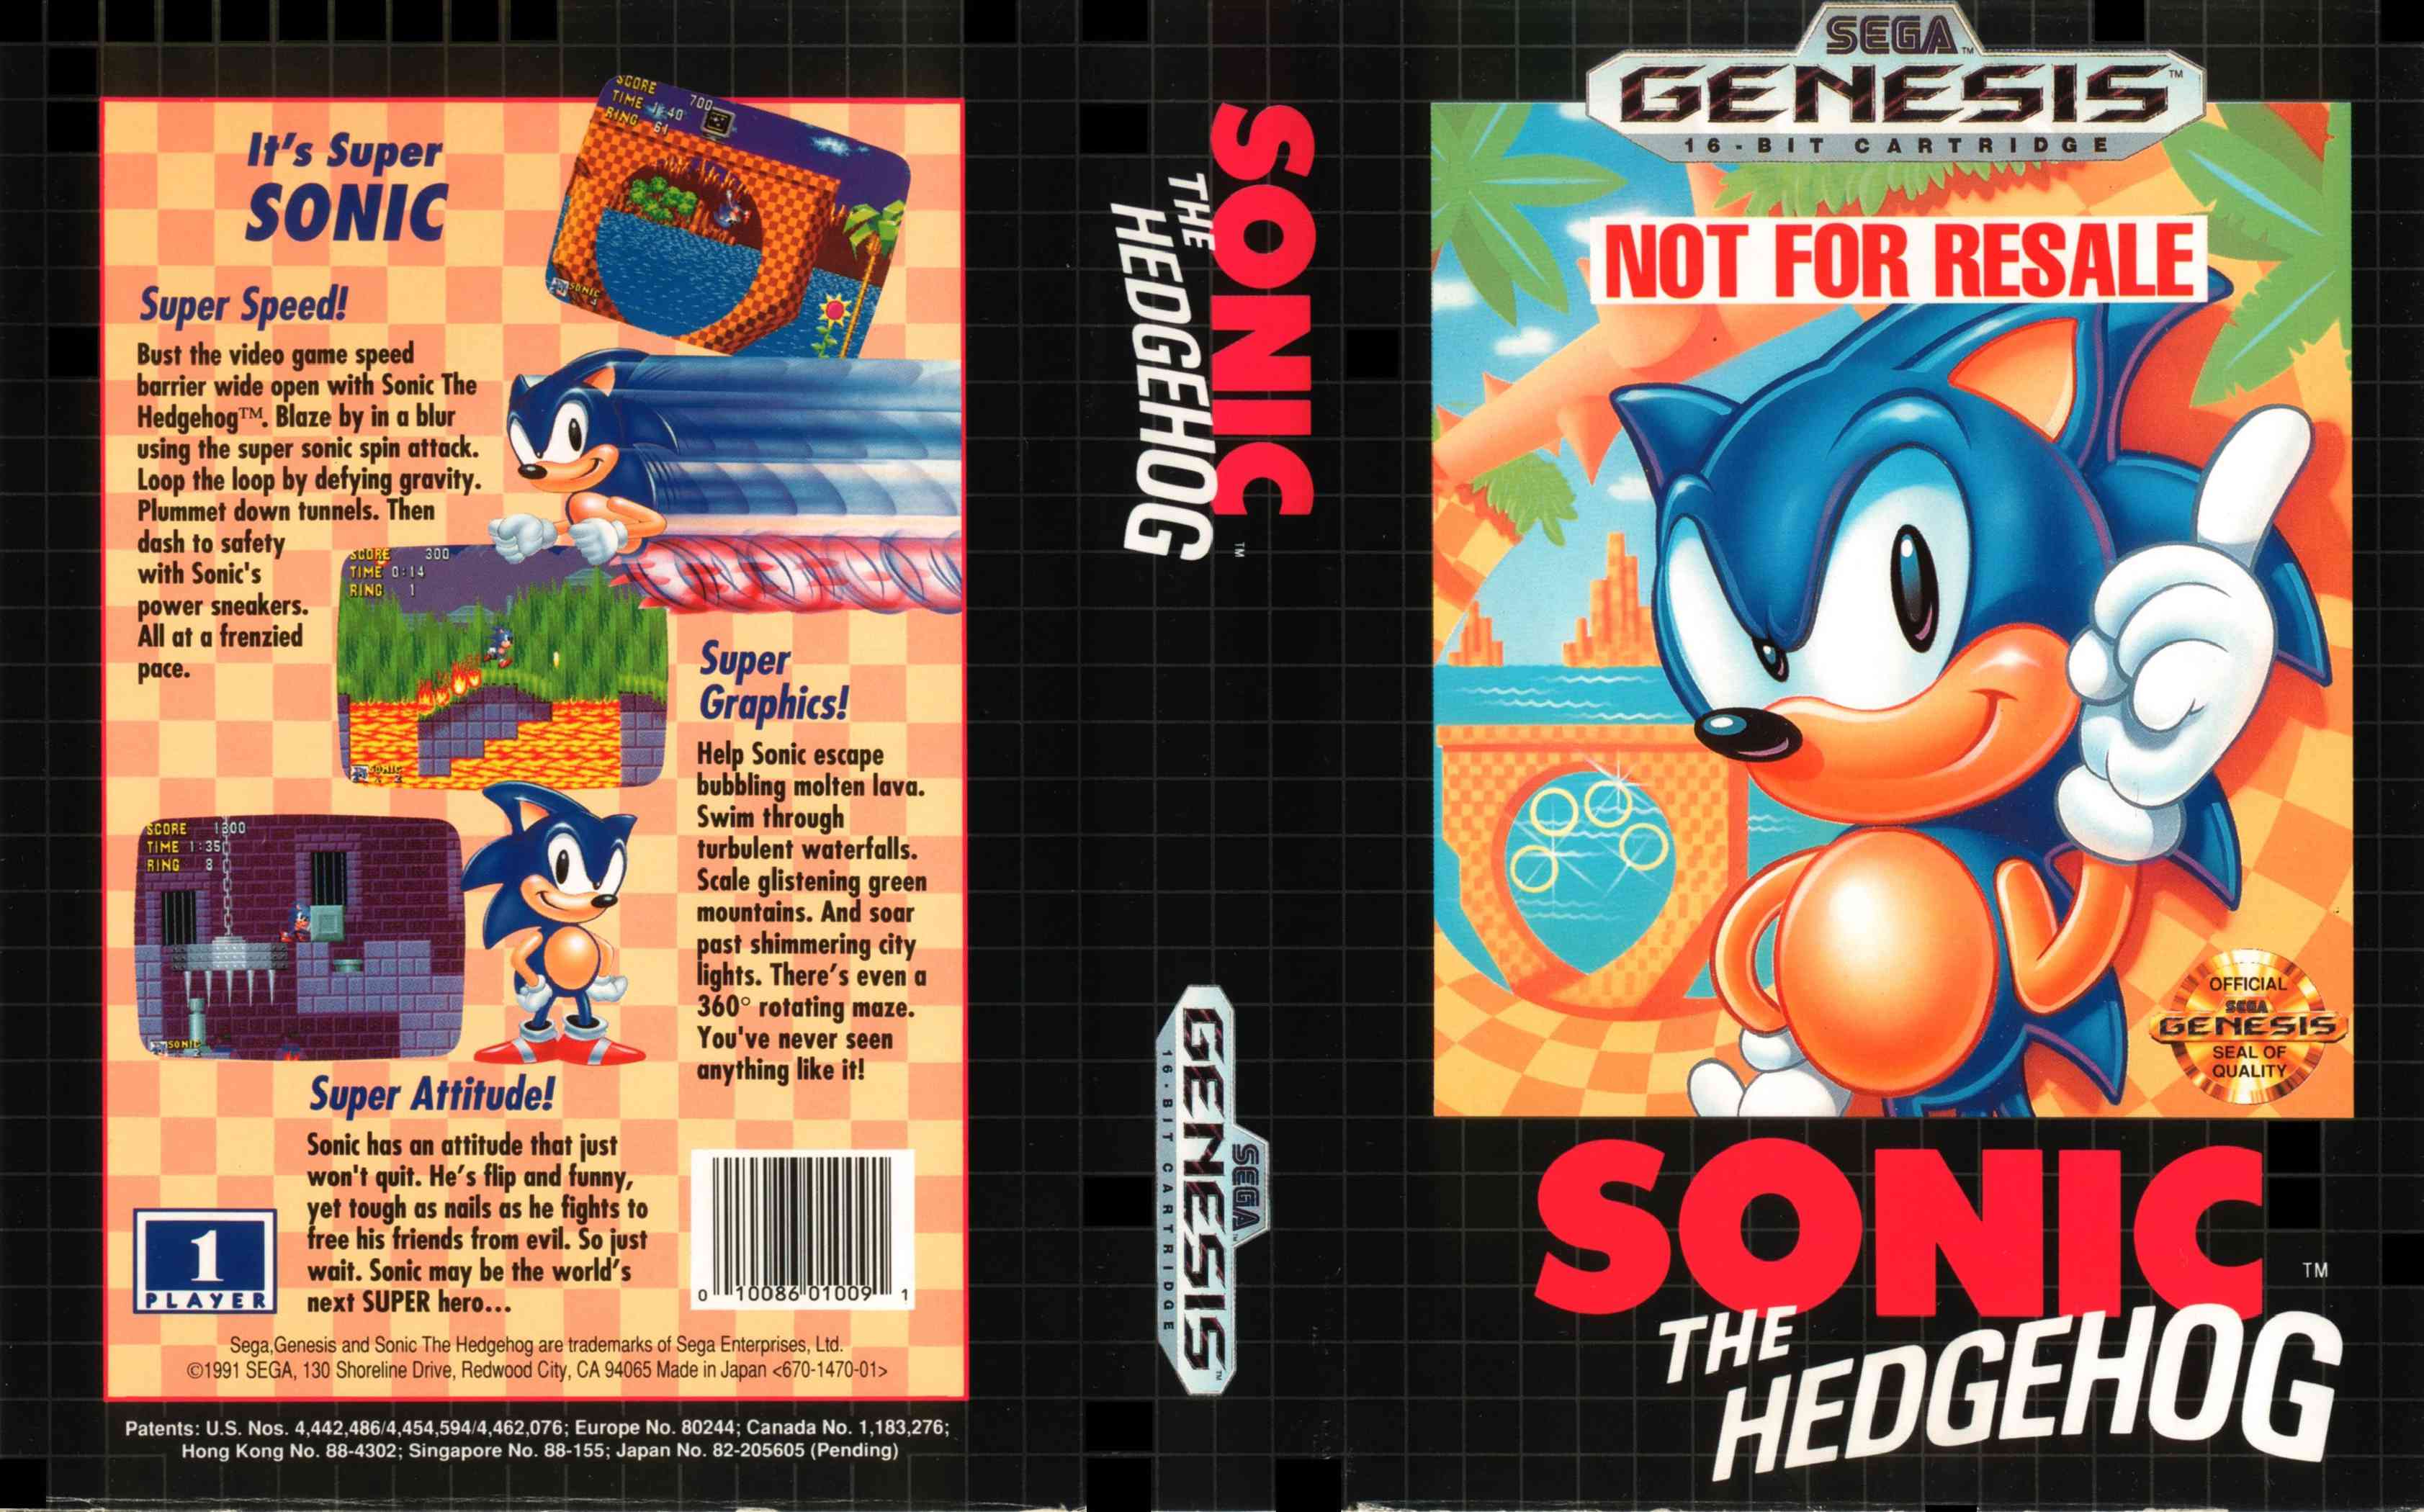 Arte da capa de Sonic the Hedgehog no Sega Genesis.